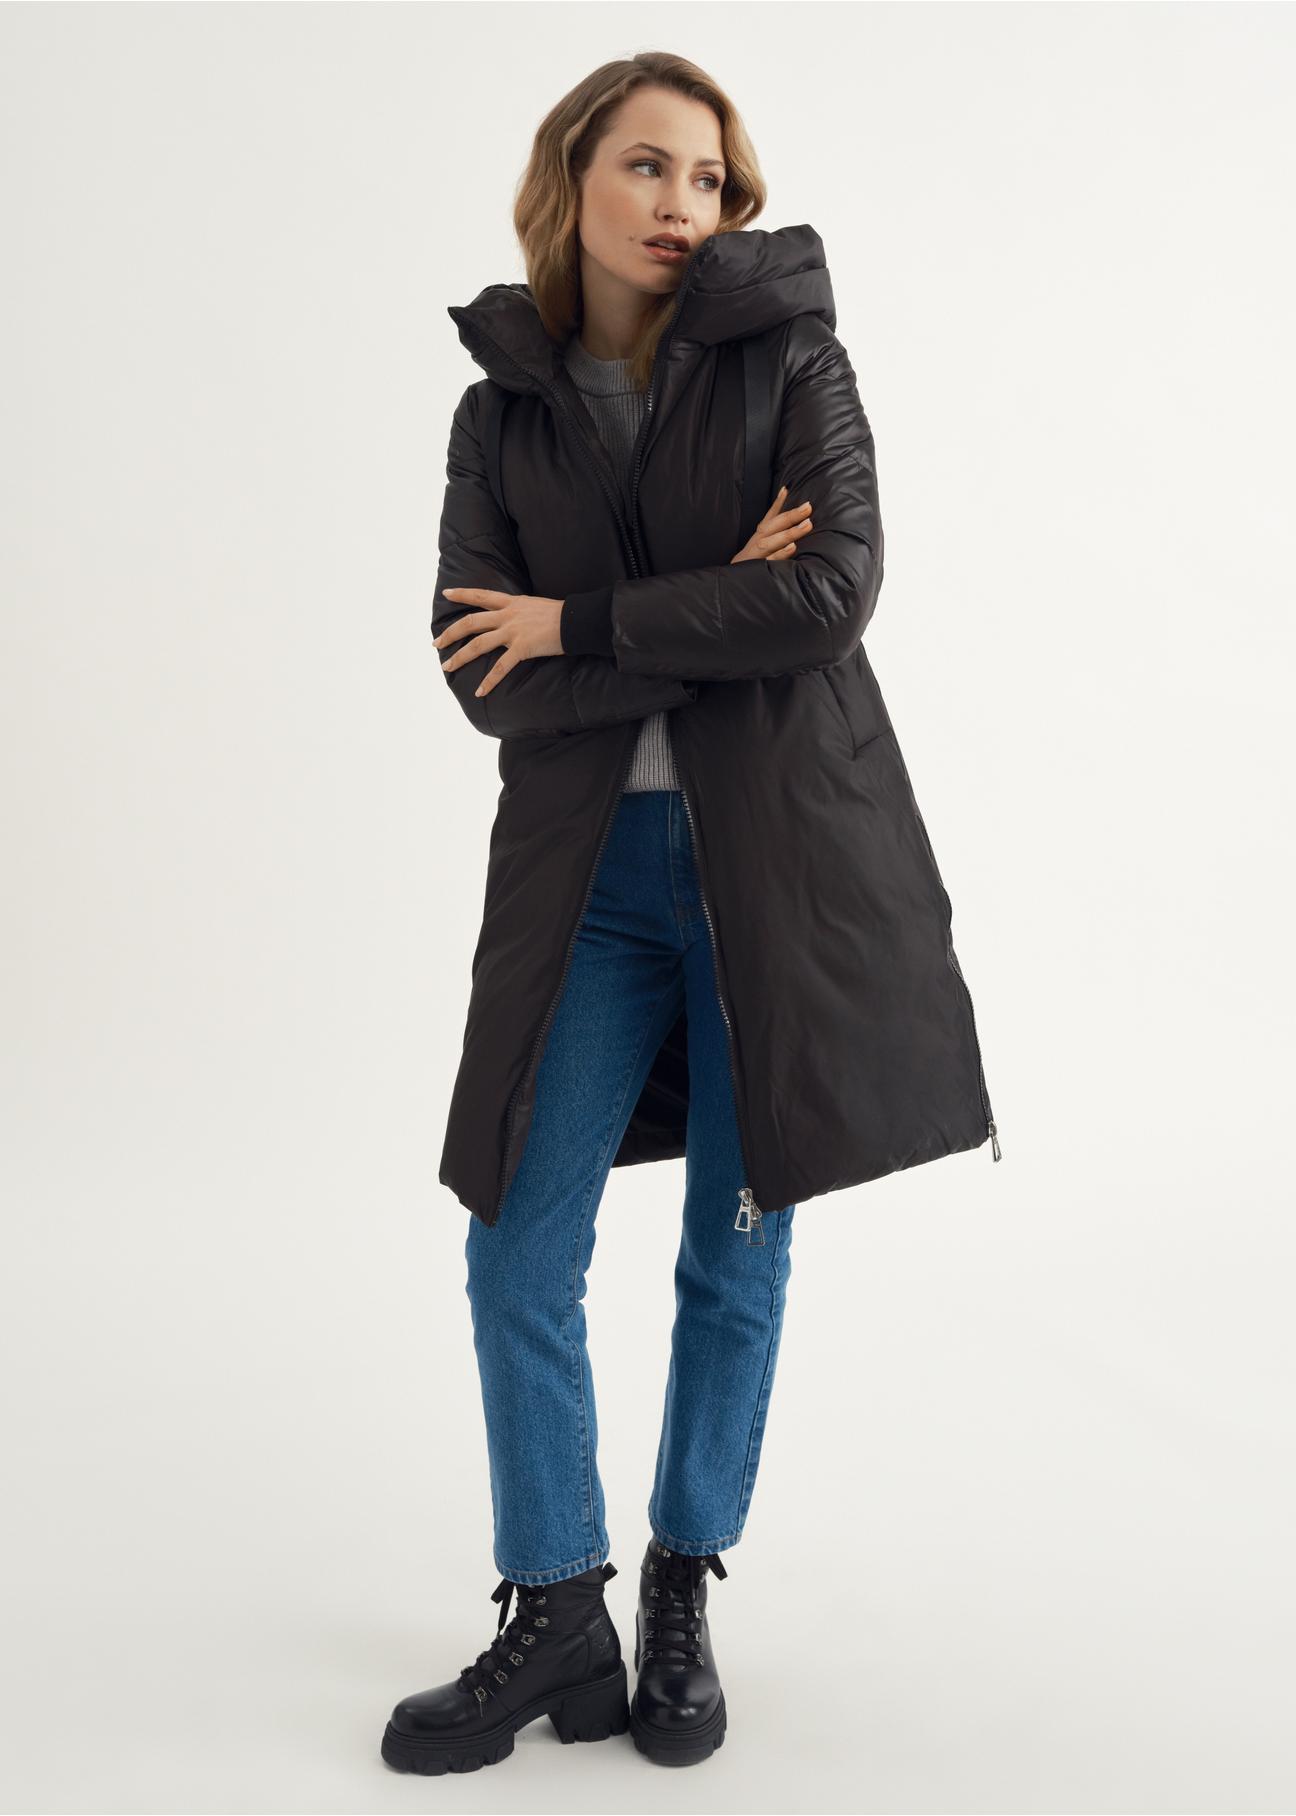 Czarna kurtka zimowa damska z kapturem KURDT-0478-99(Z23)